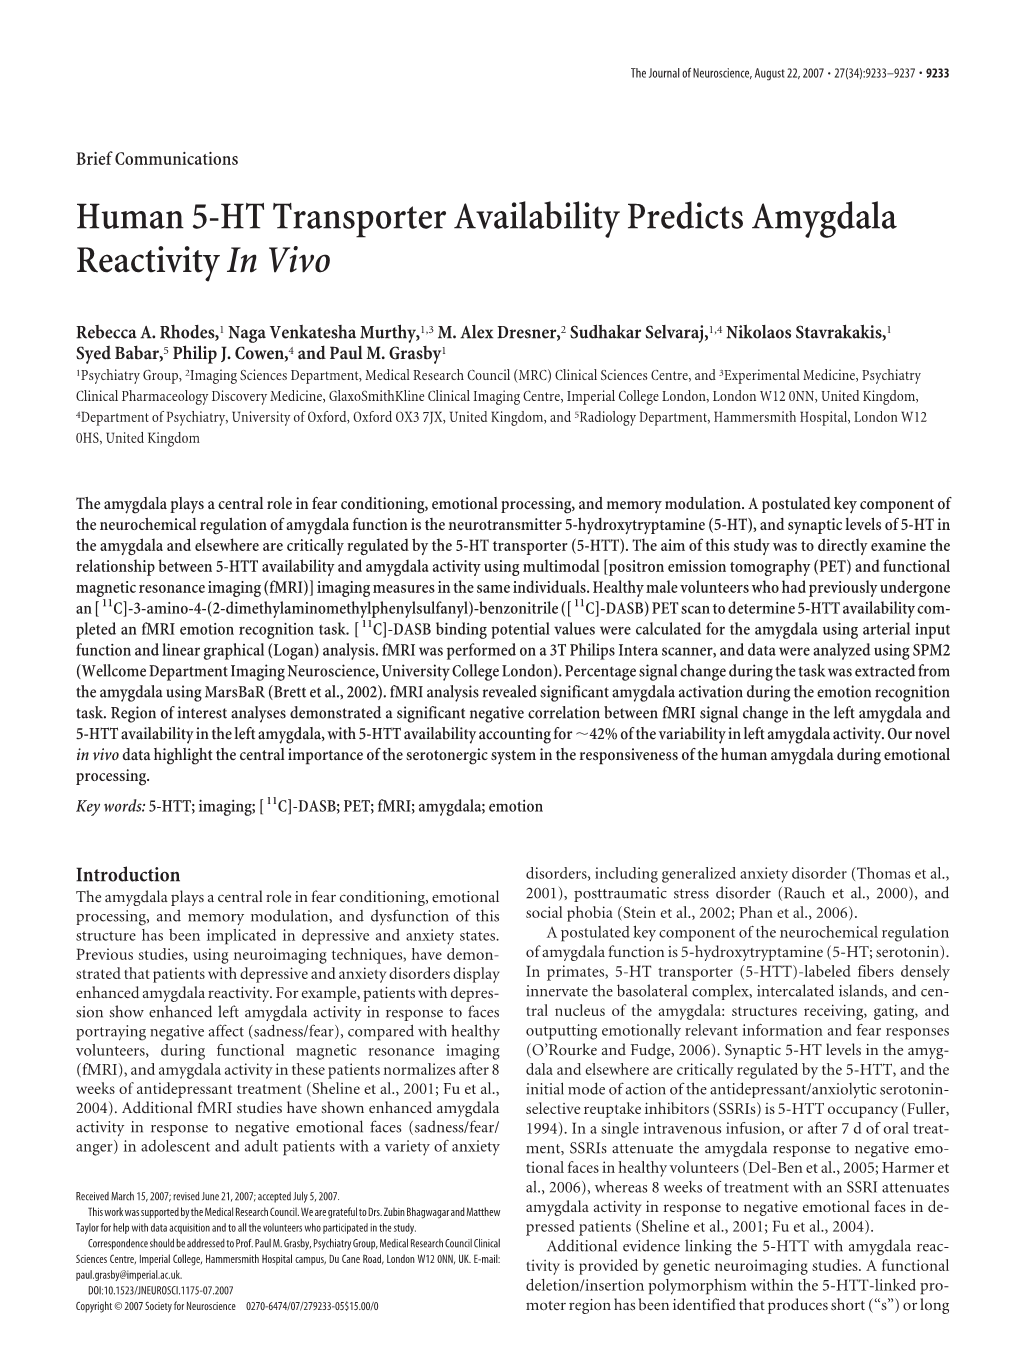 Human 5-HT Transporter Availability Predicts Amygdala Reactivityin Vivo